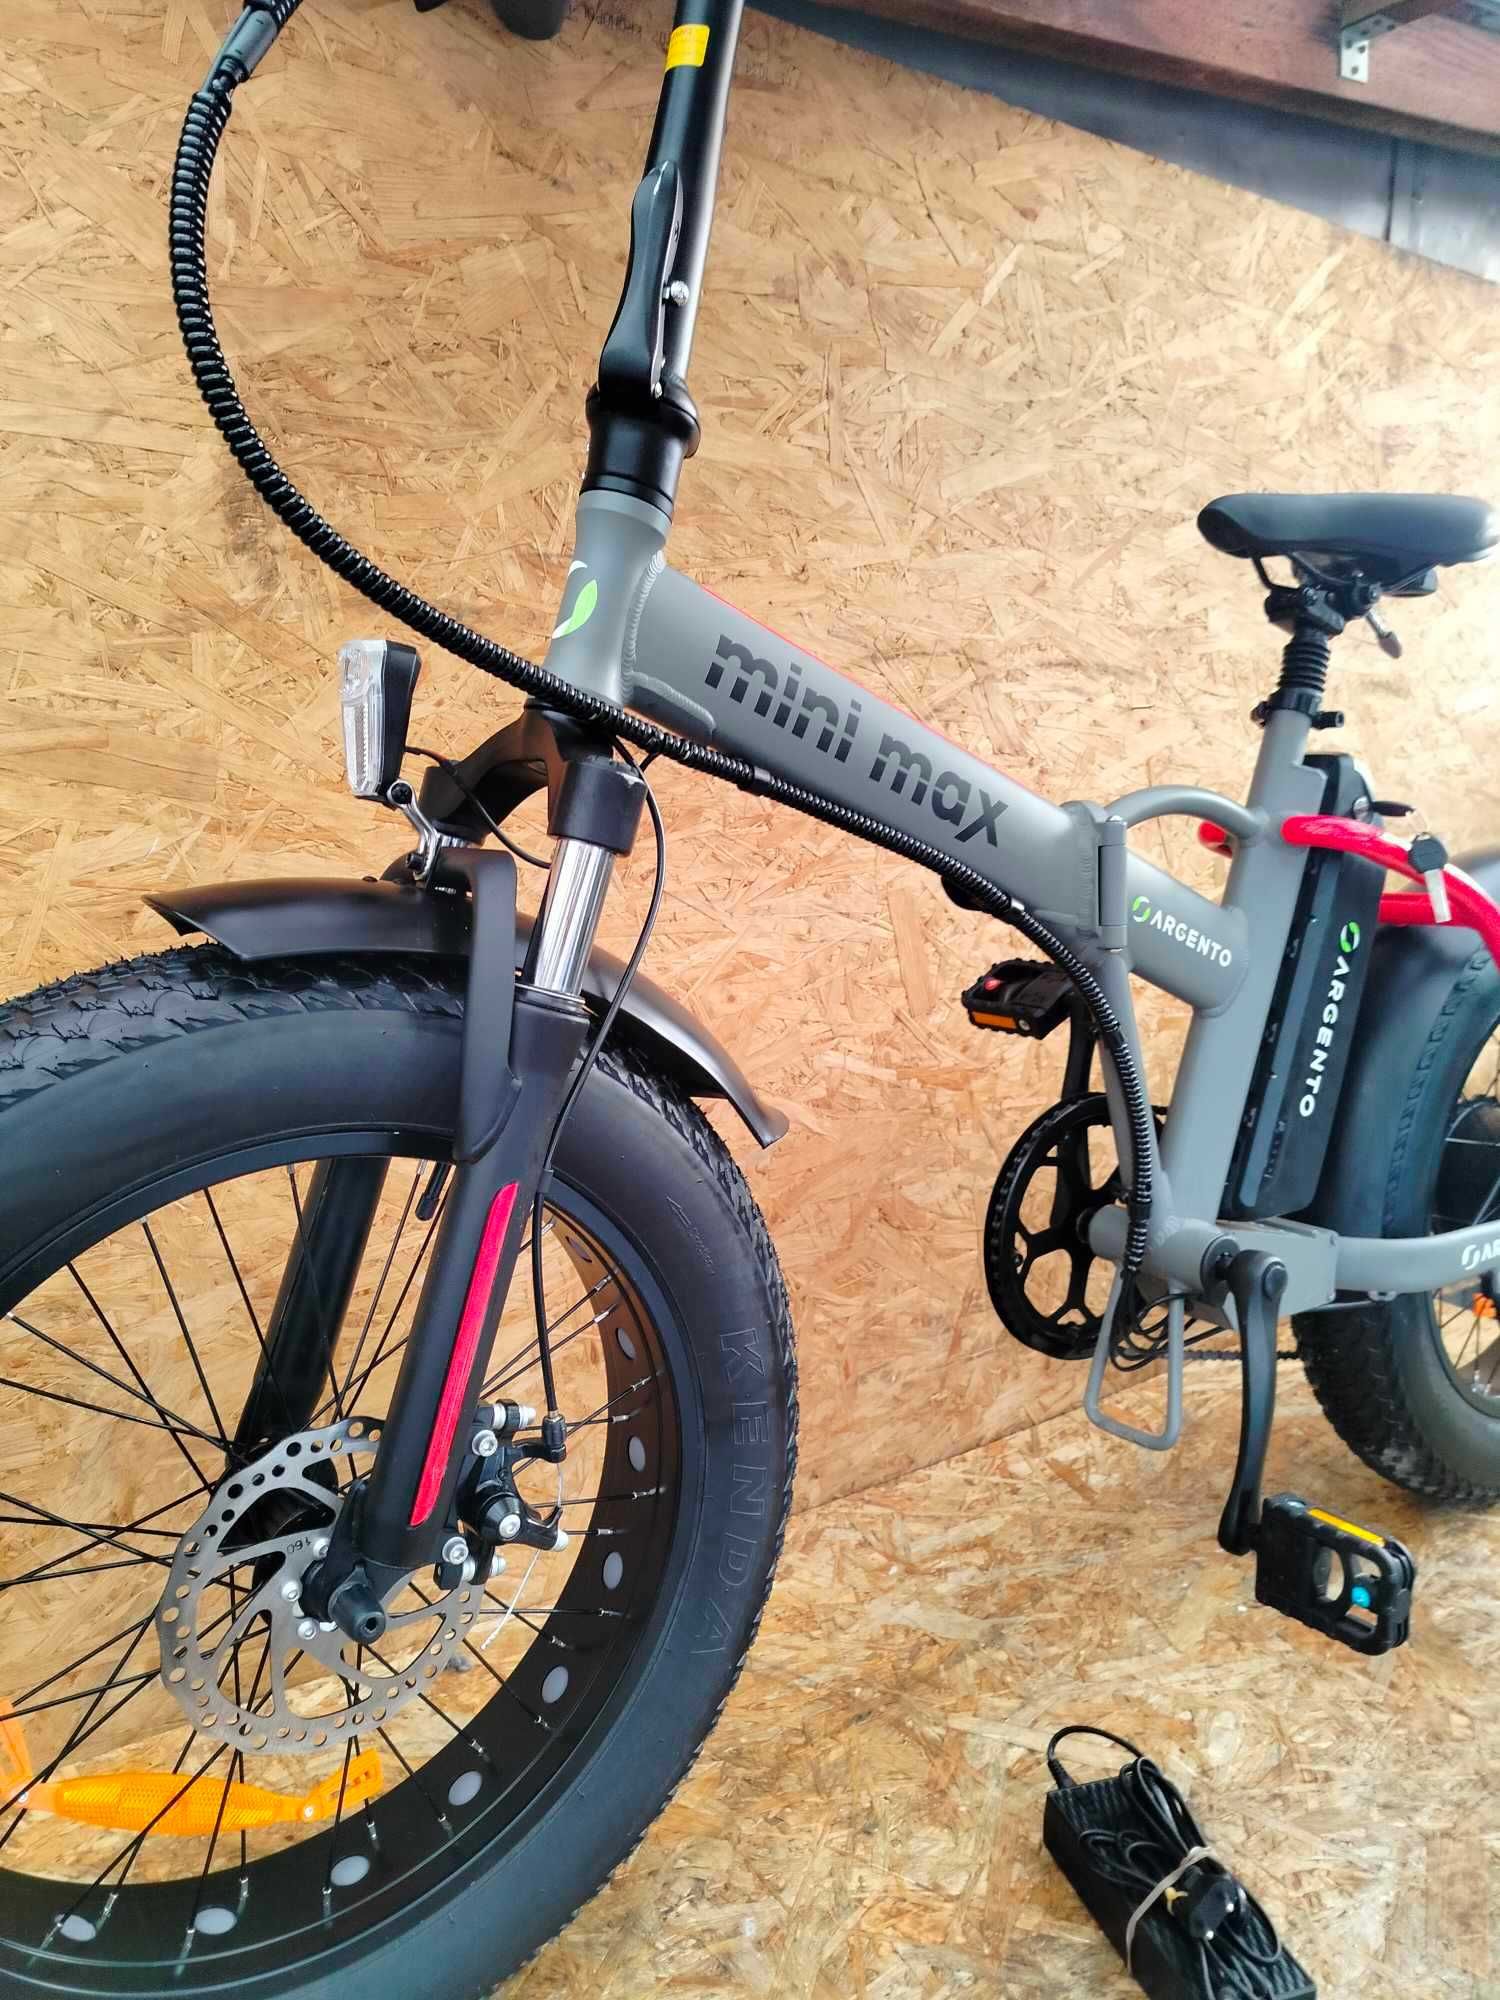 Rower elektryczny składany ARGENTO Mini Max Fatbike